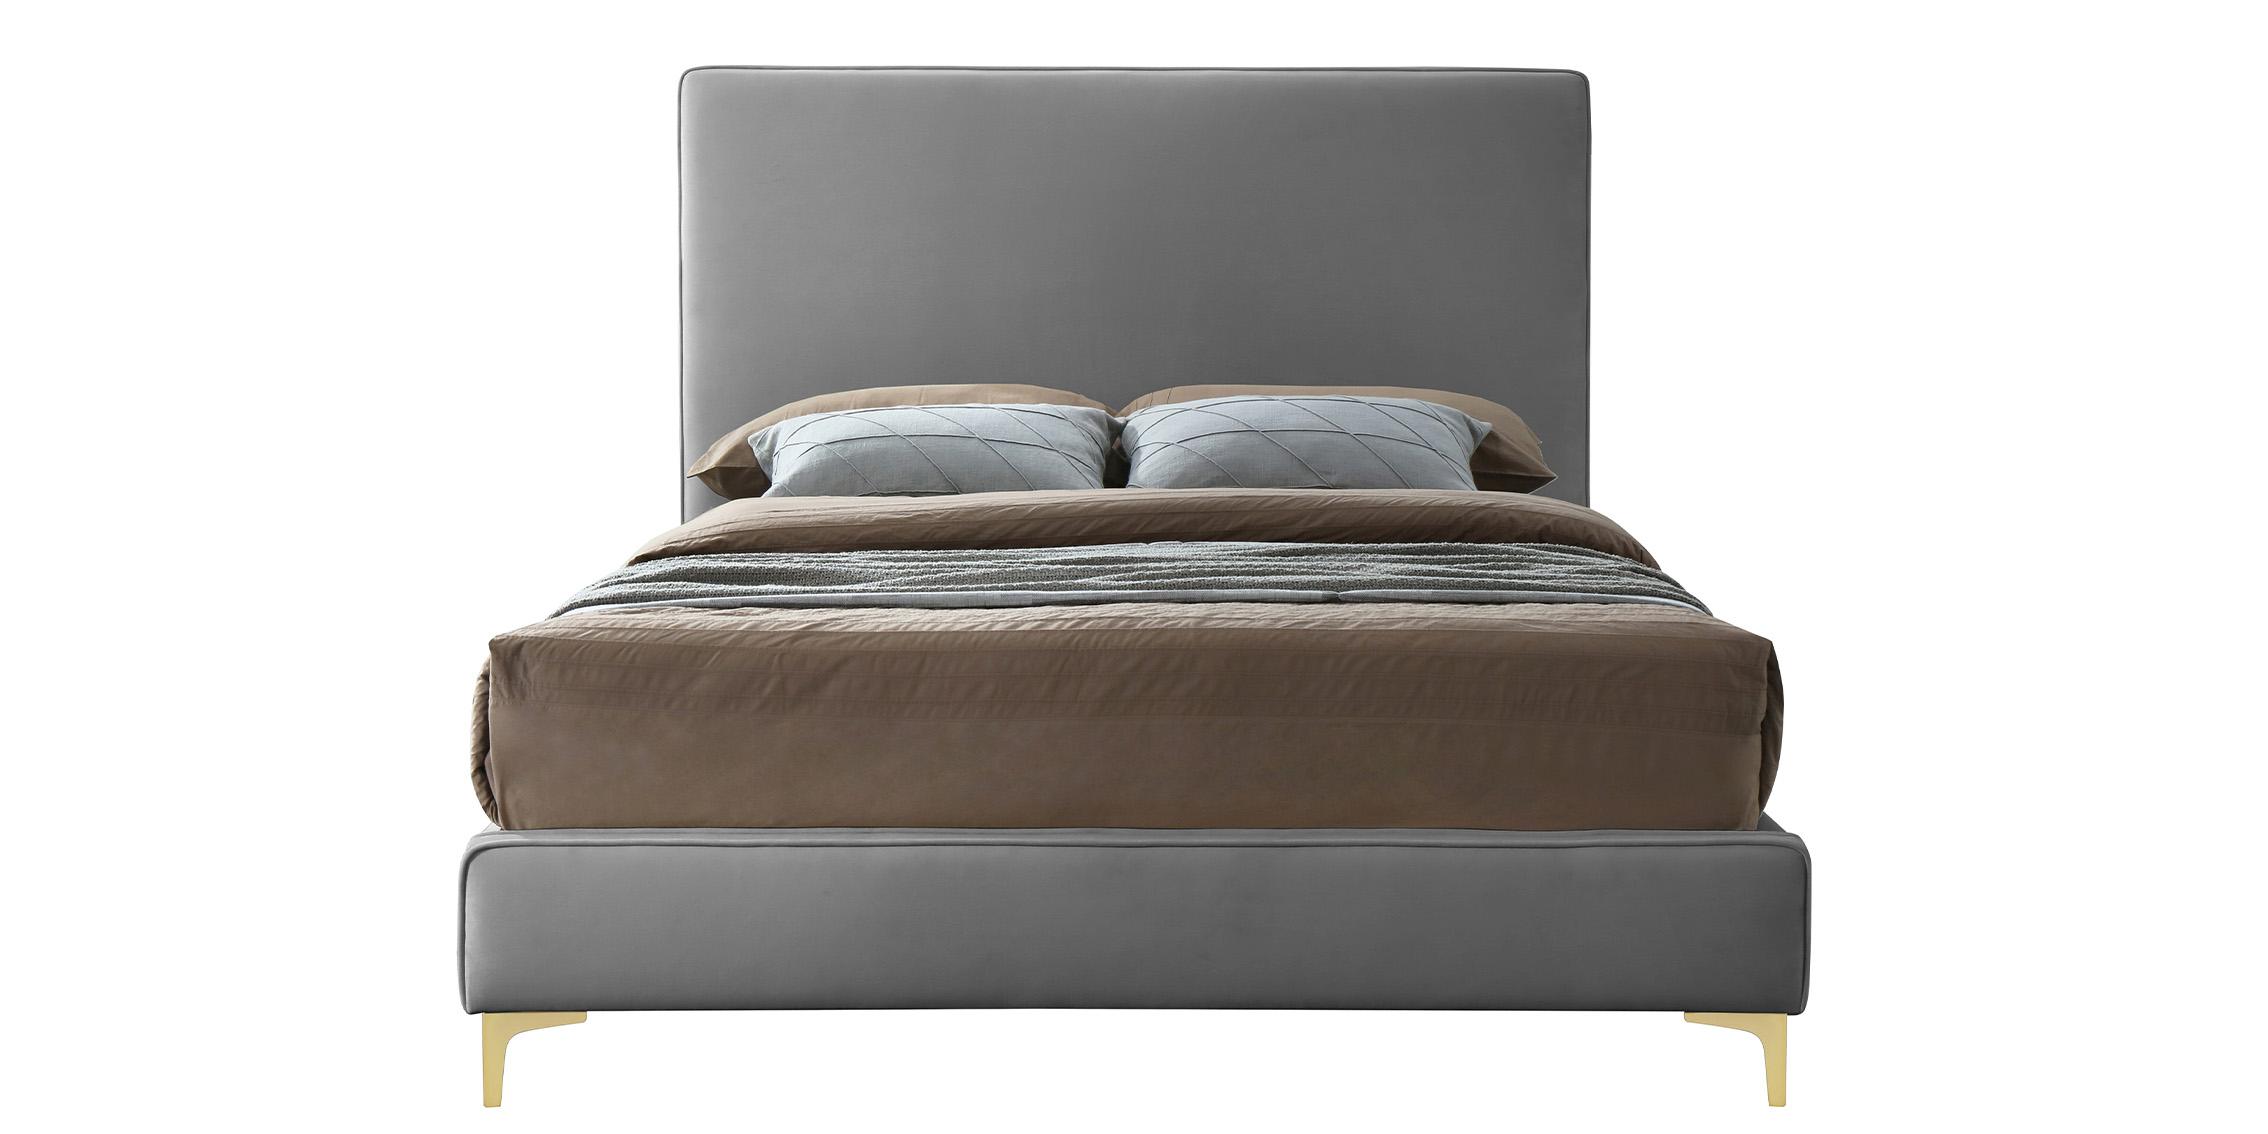 

    
GeriGrey-Q Meridian Furniture Platform Bed
